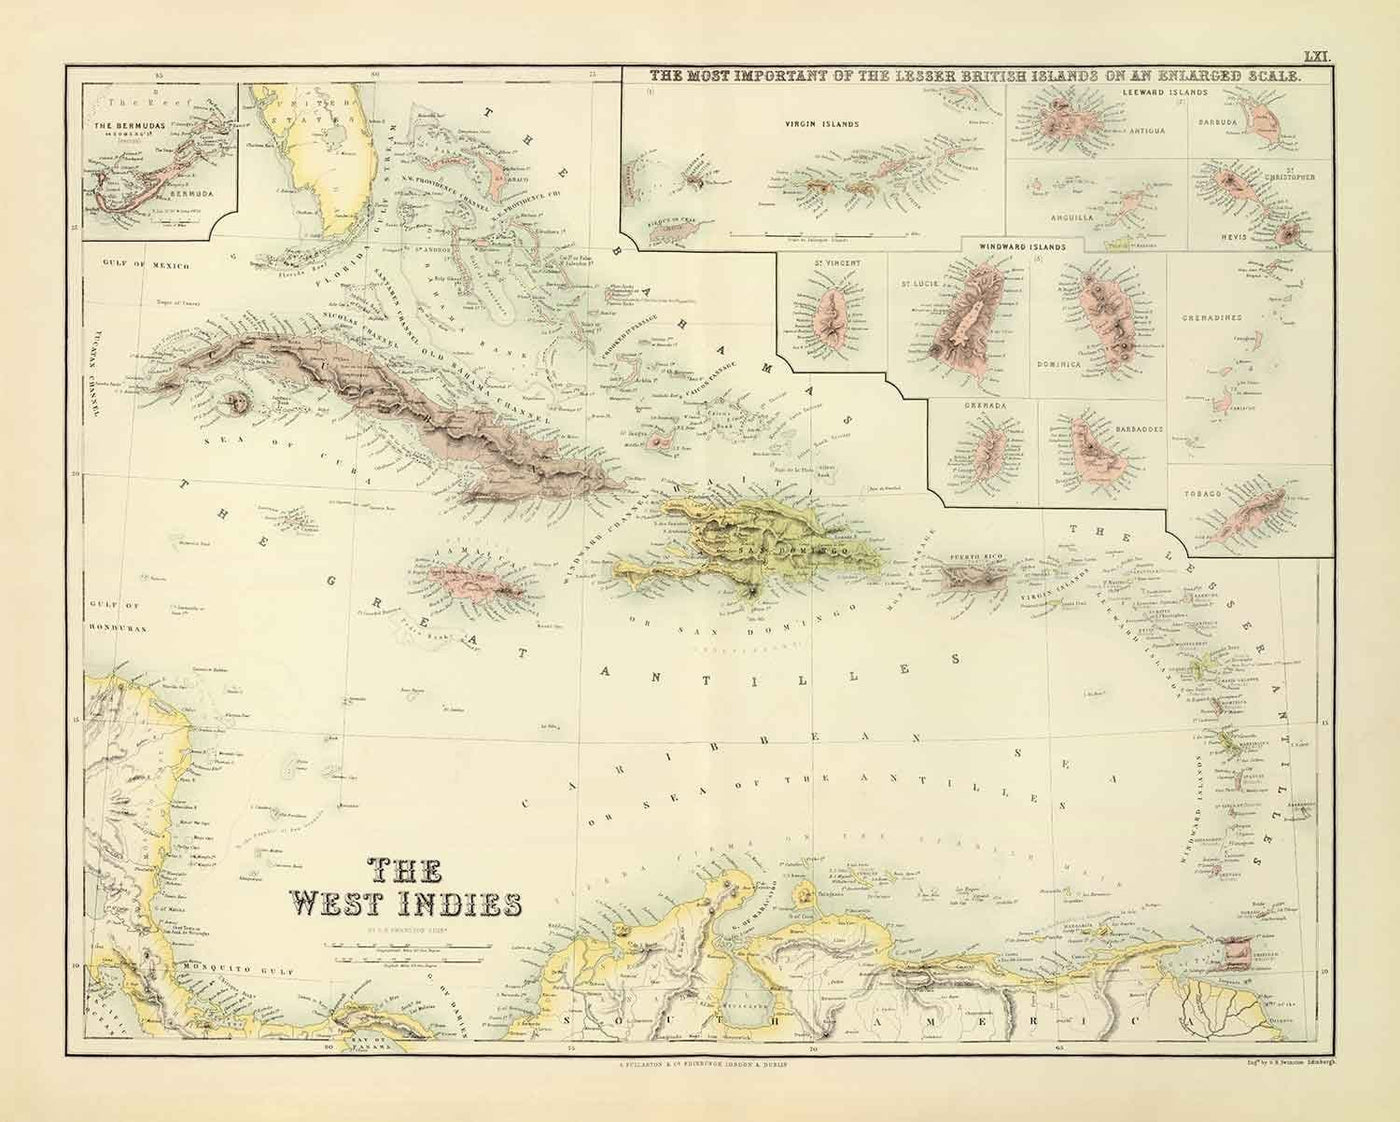 Old Map of the West Indies, 1872 by Fullarton - Bermuda, Cuba, Haiti, Puerto Rico, Jamaica, Bahamas, Antilles, Colonial Caribbean Sea